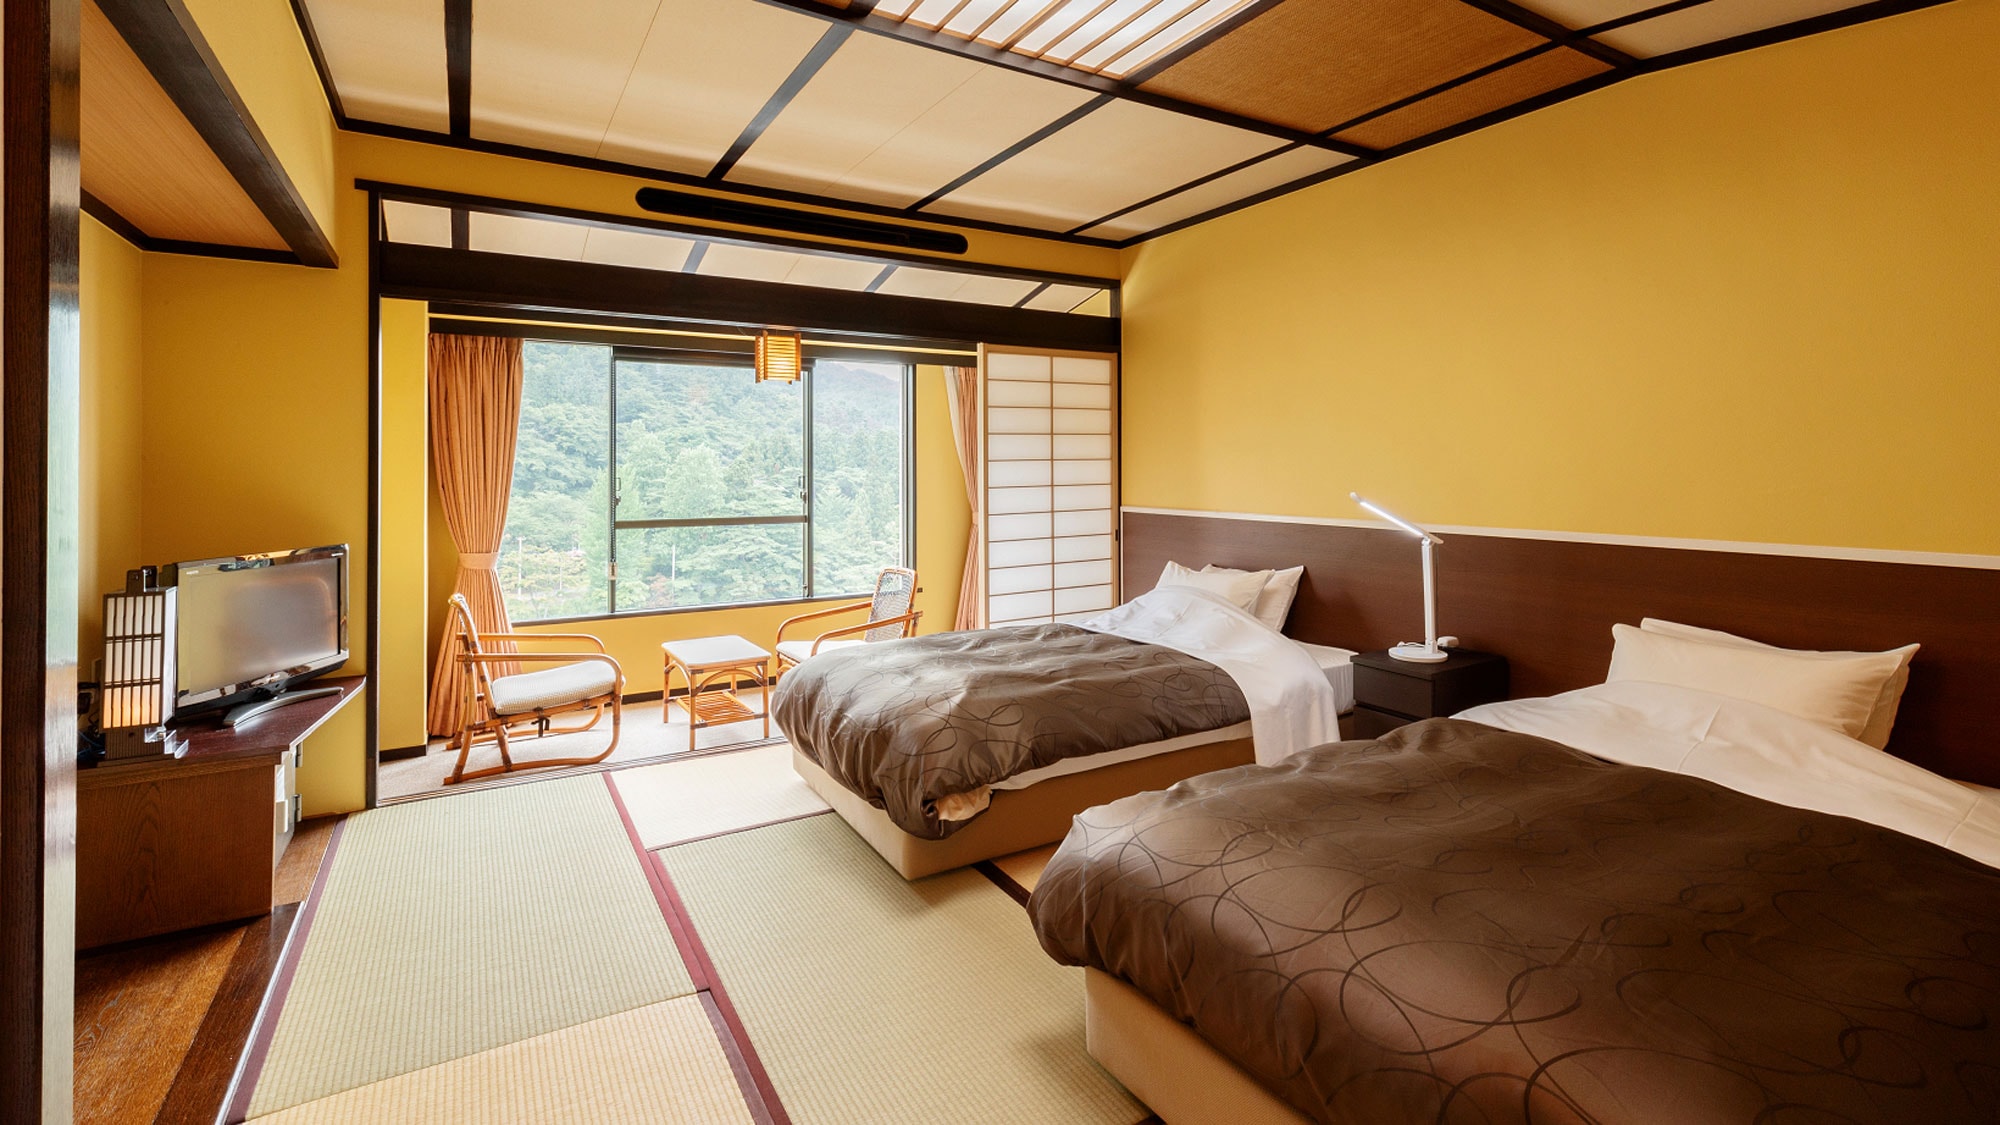 Kamar twin bergaya Jepang-Kamar twin dengan 2 tempat tidur di 10 tikar tatami, yang memiliki gaya Jepang dan Barat-